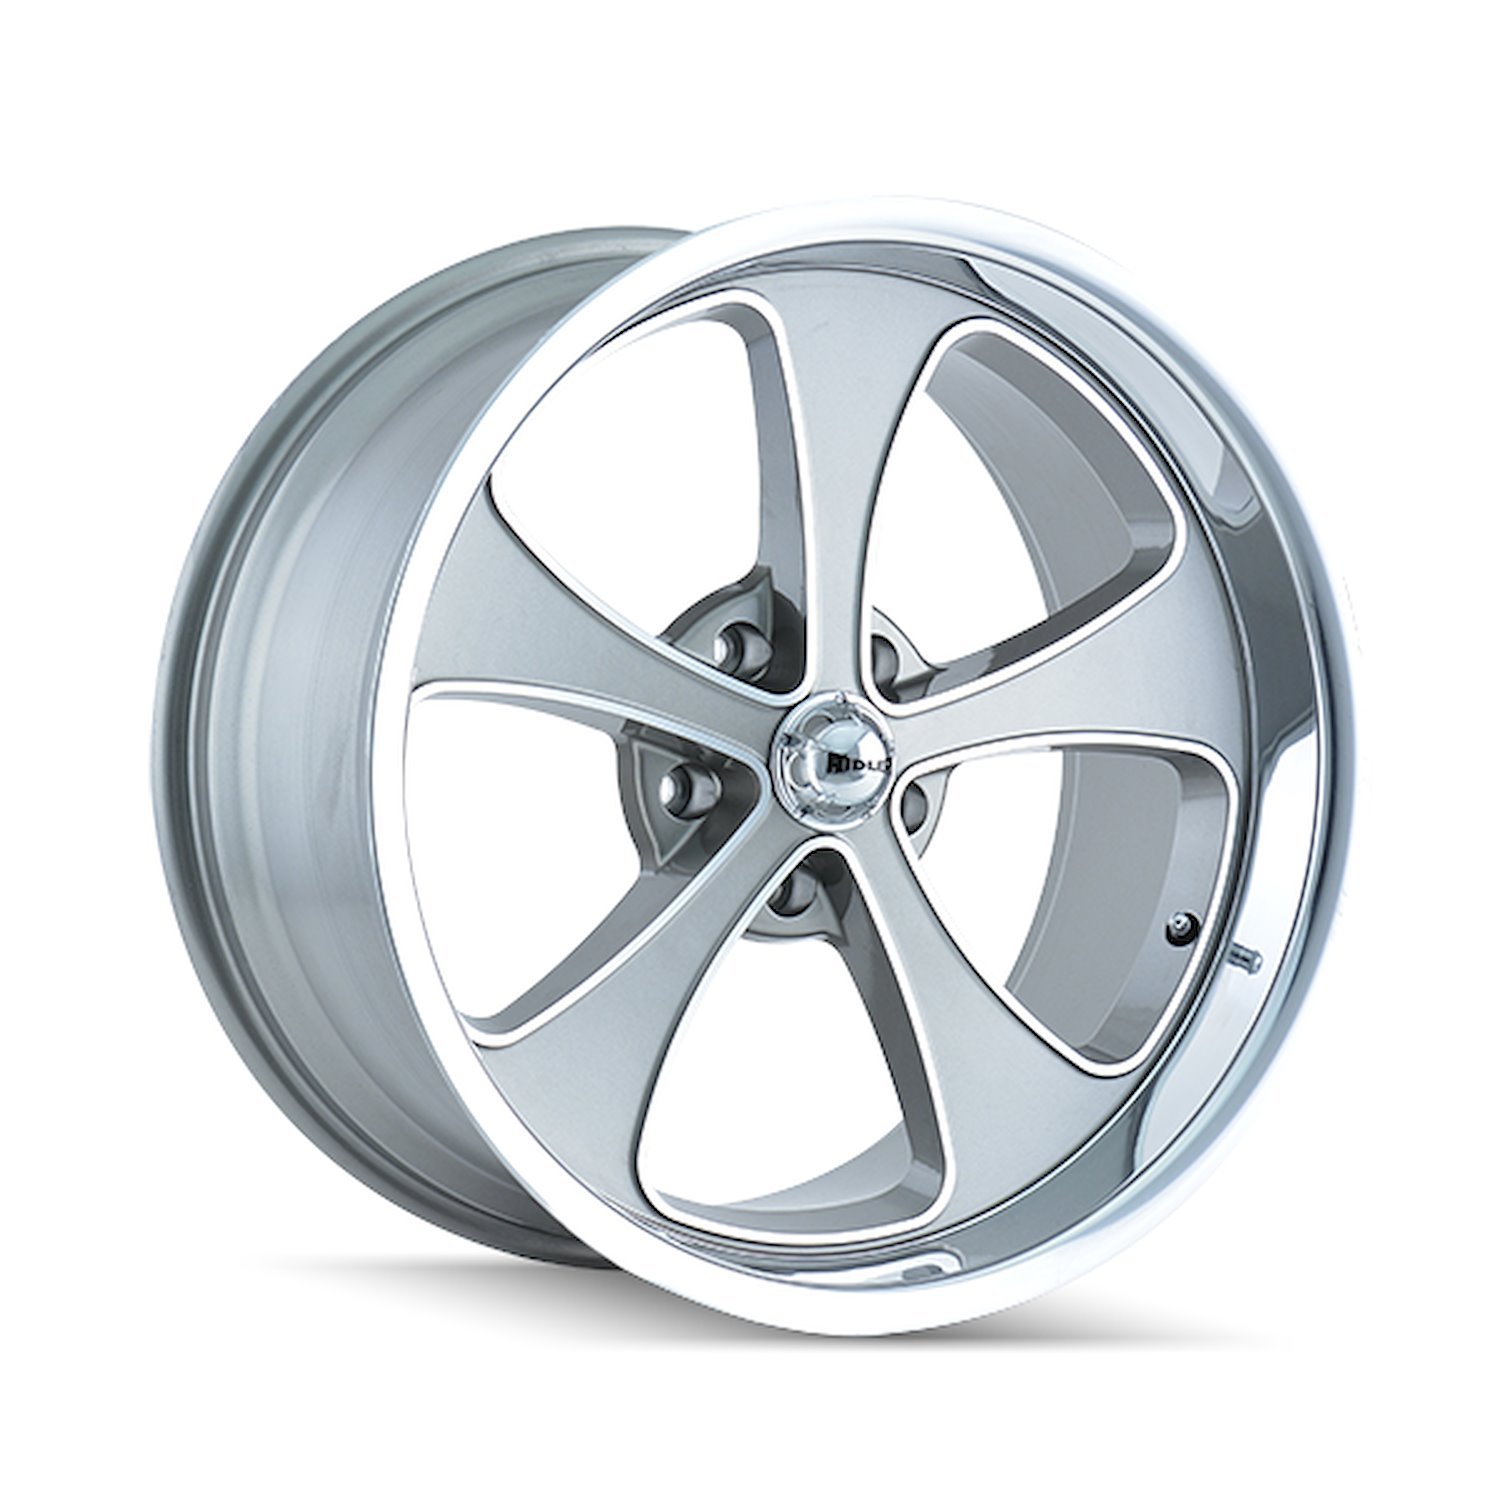 645-2865GP 645-Series Wheel [Size: 20" x 8.50"] Gloss Grey Machined/Polished Finish